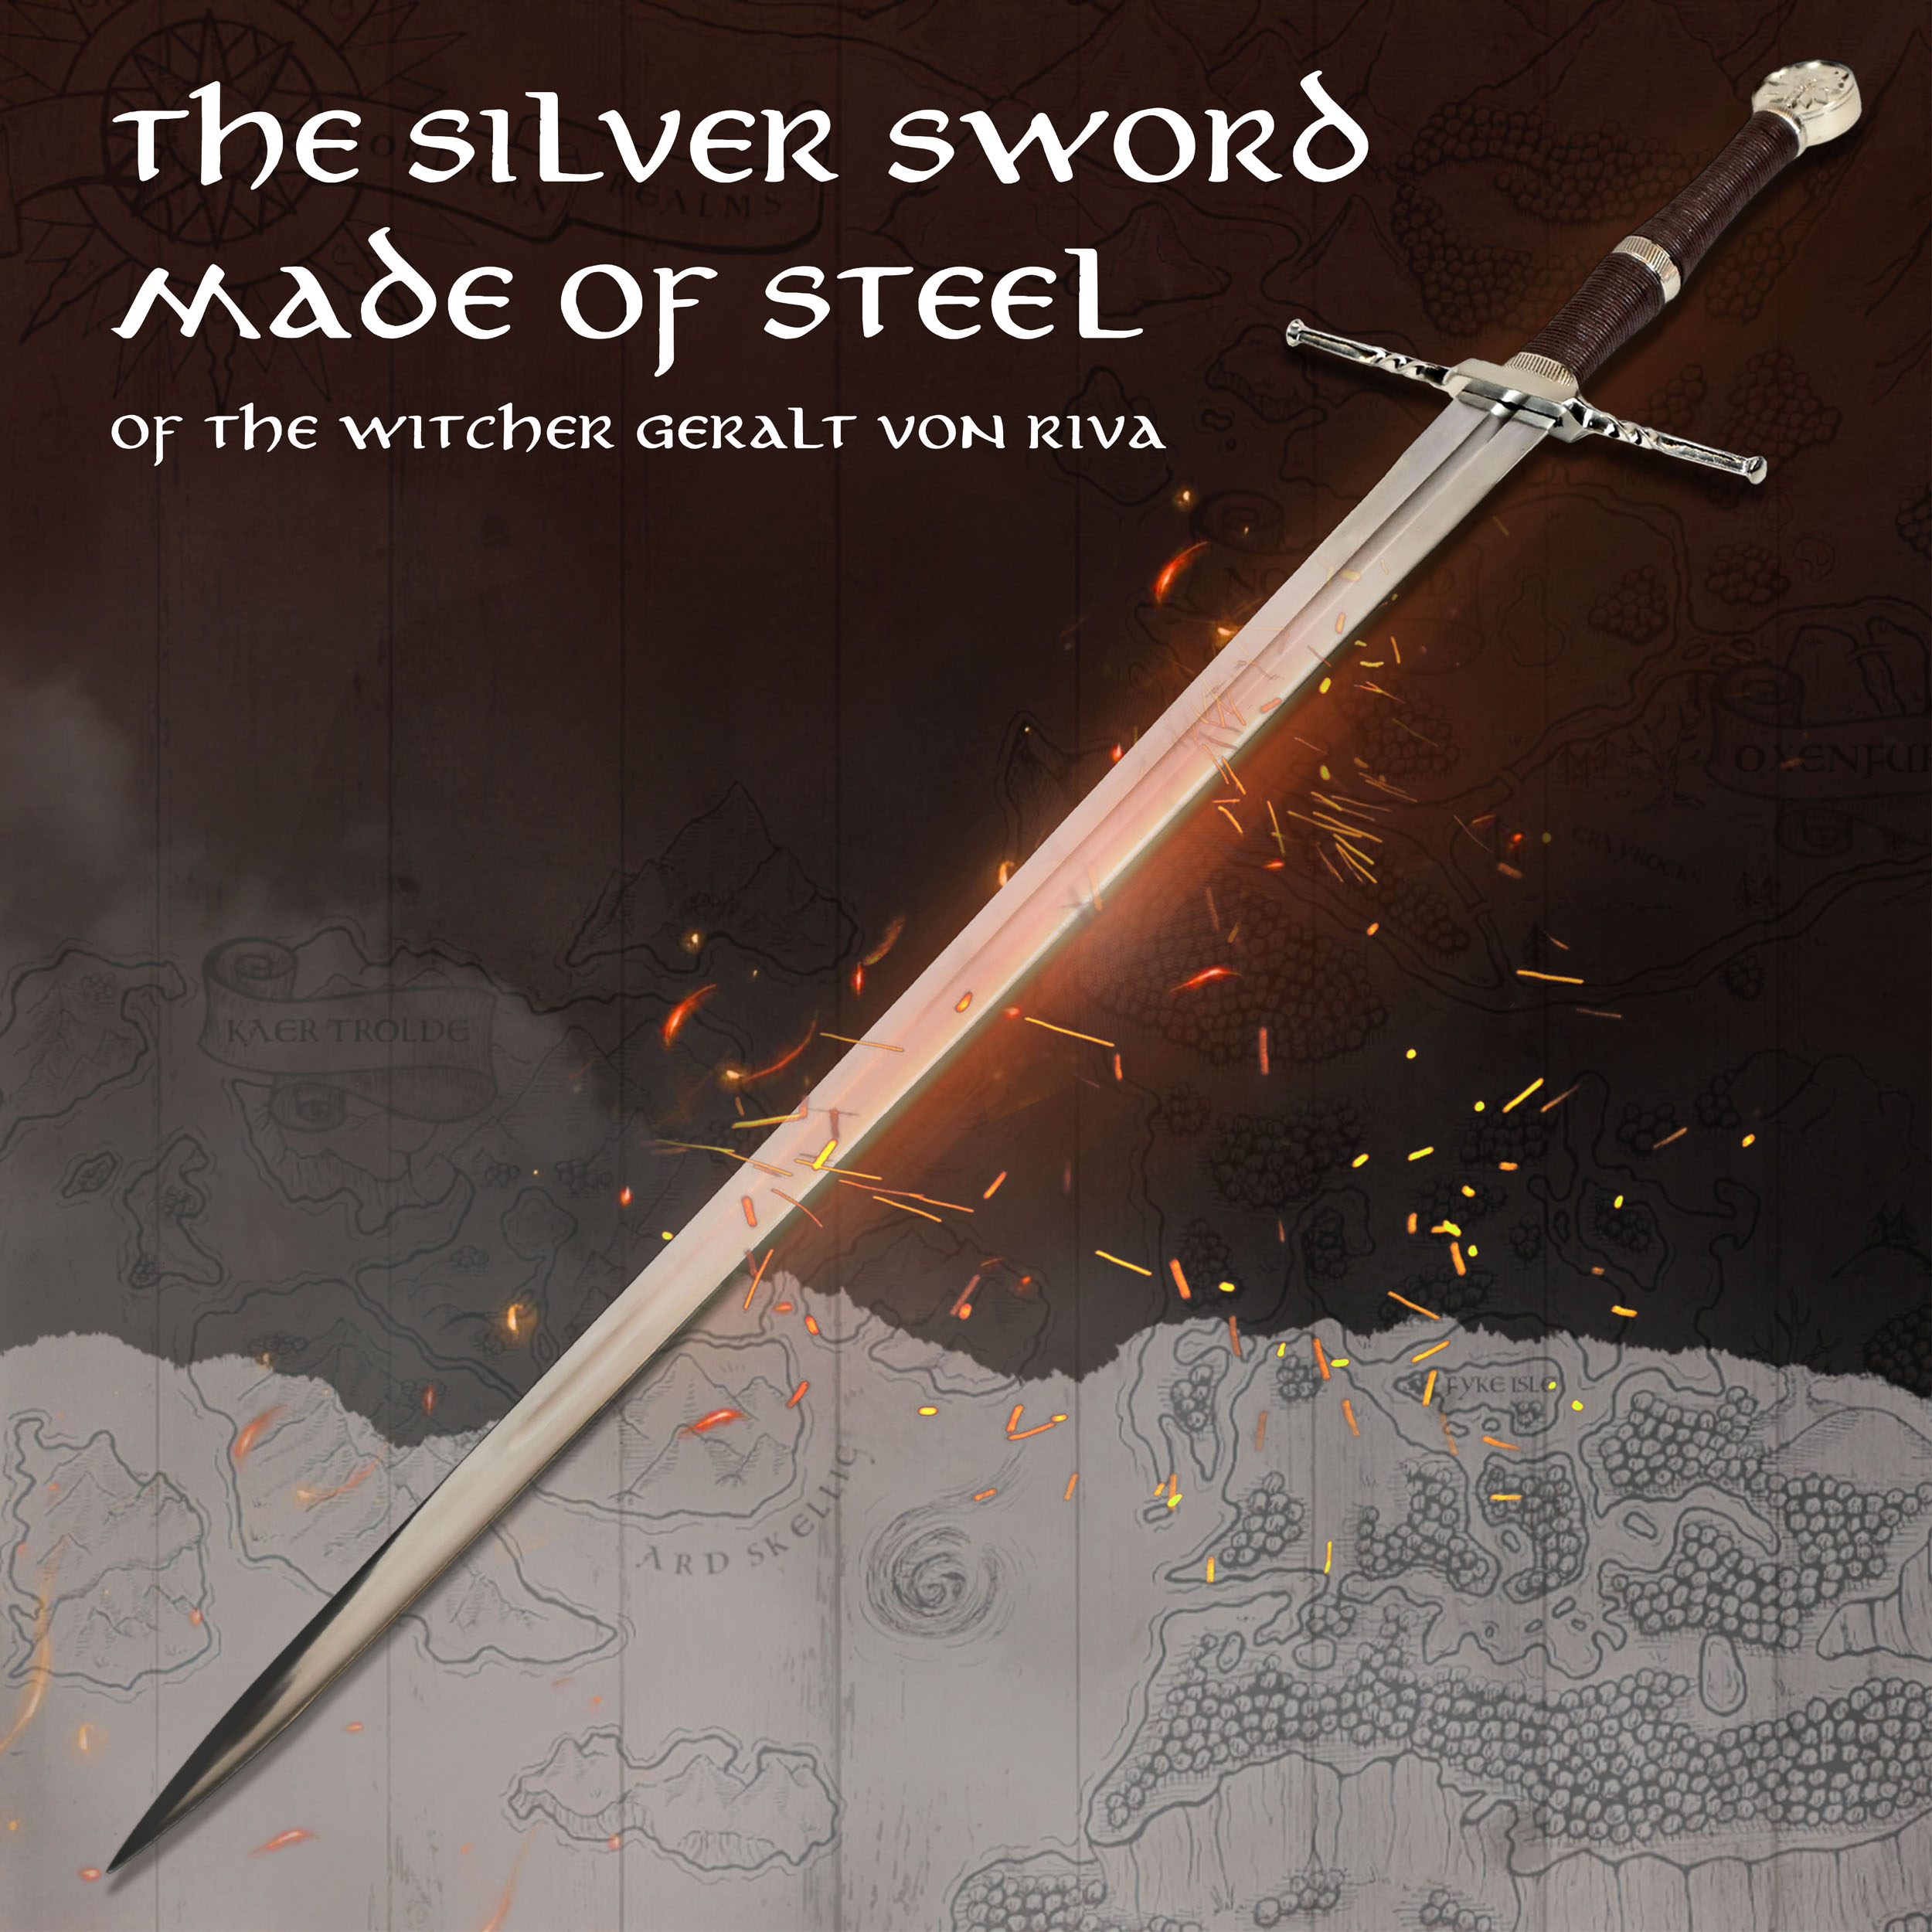 Witcher - Stahl Schwert mit Scheide